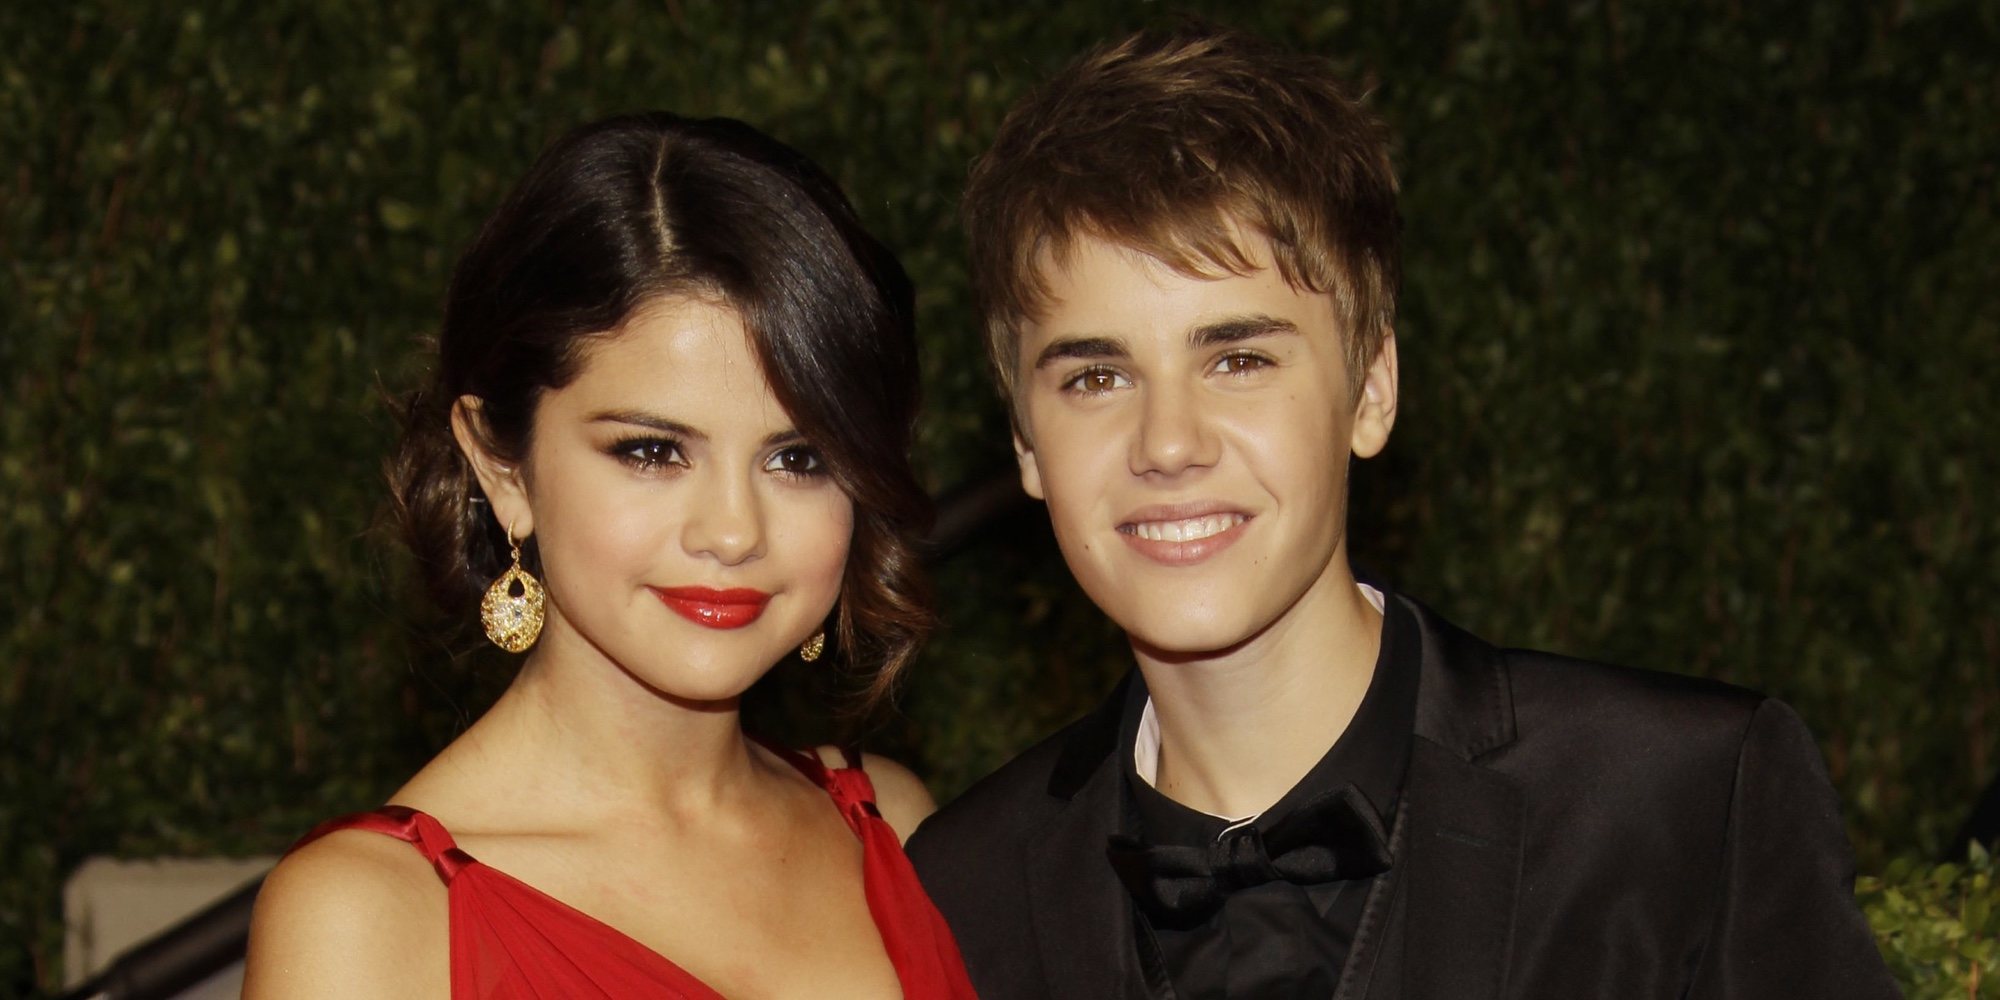 Un hilo de Twitter recopila todas las infidelidades de Justin Bieber a Selena Gomez cronológicamente